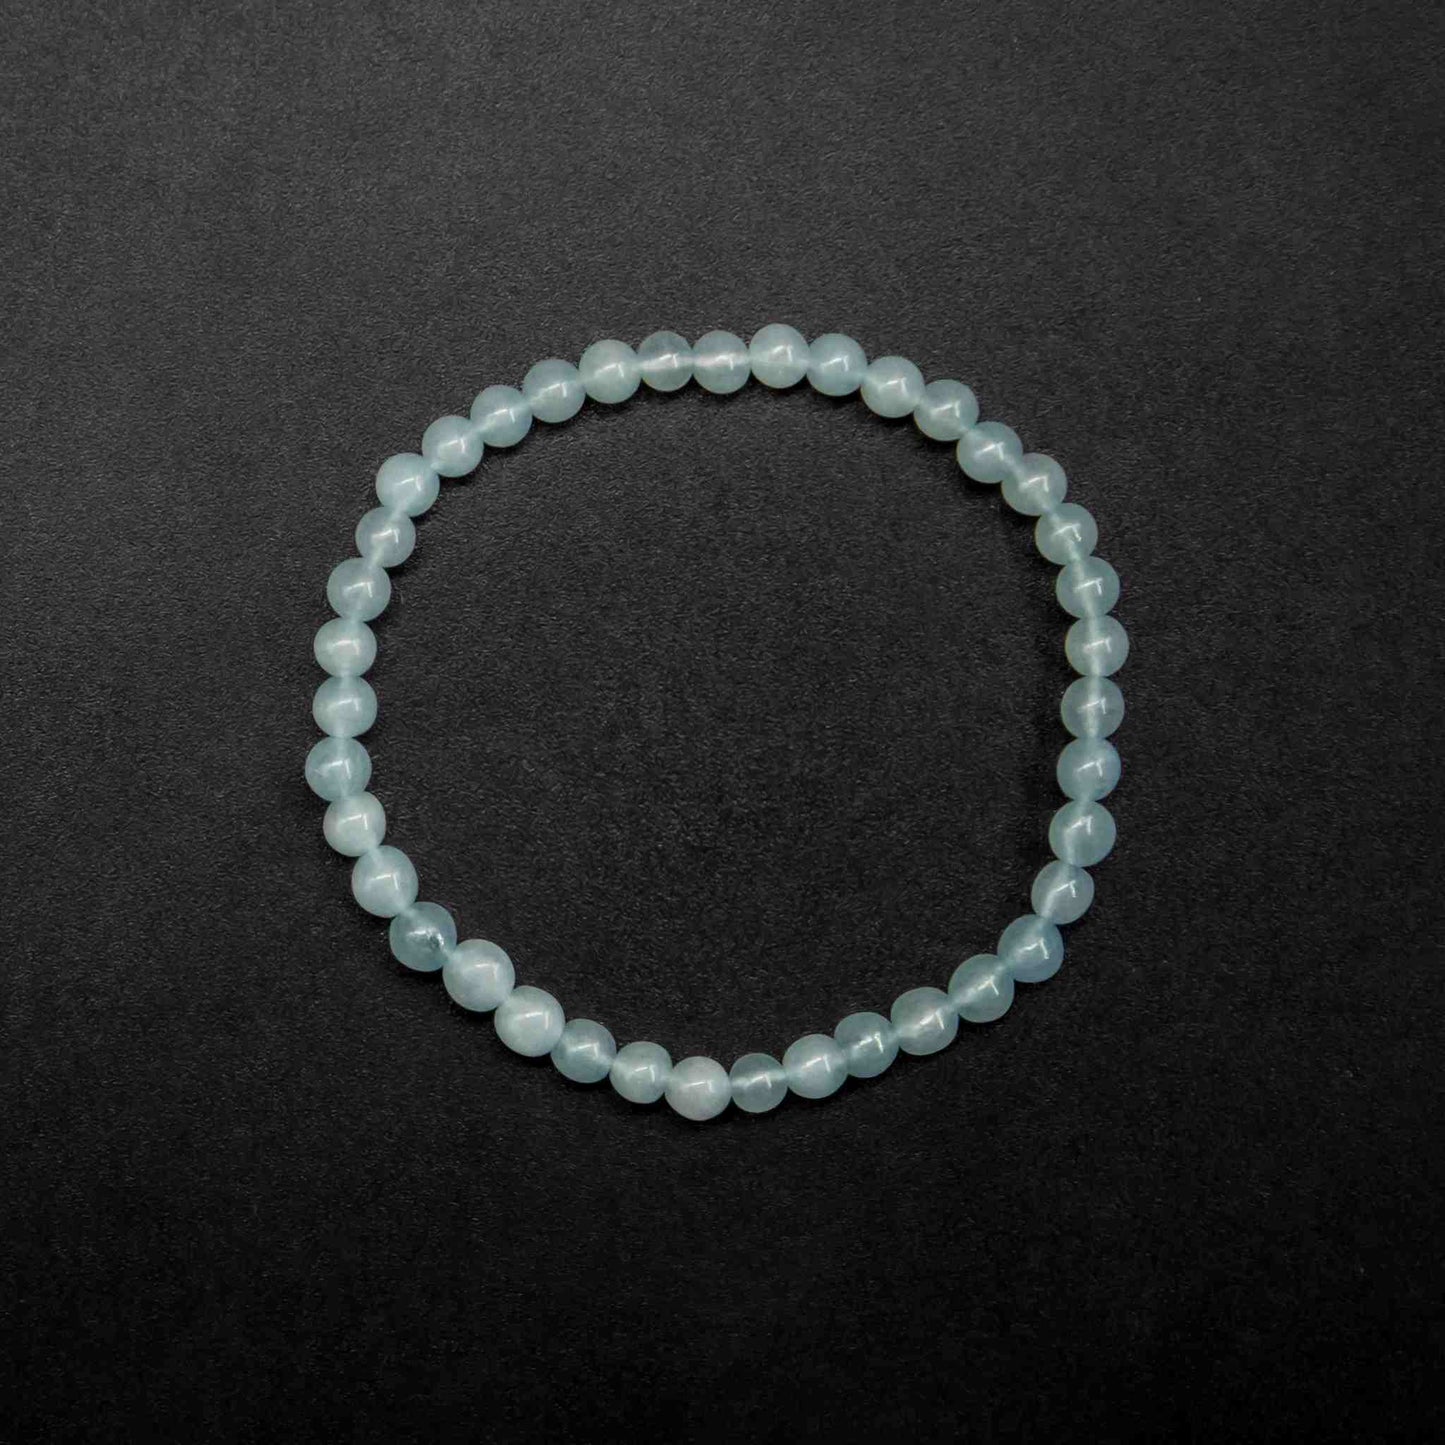 aquamarine stone bracelet